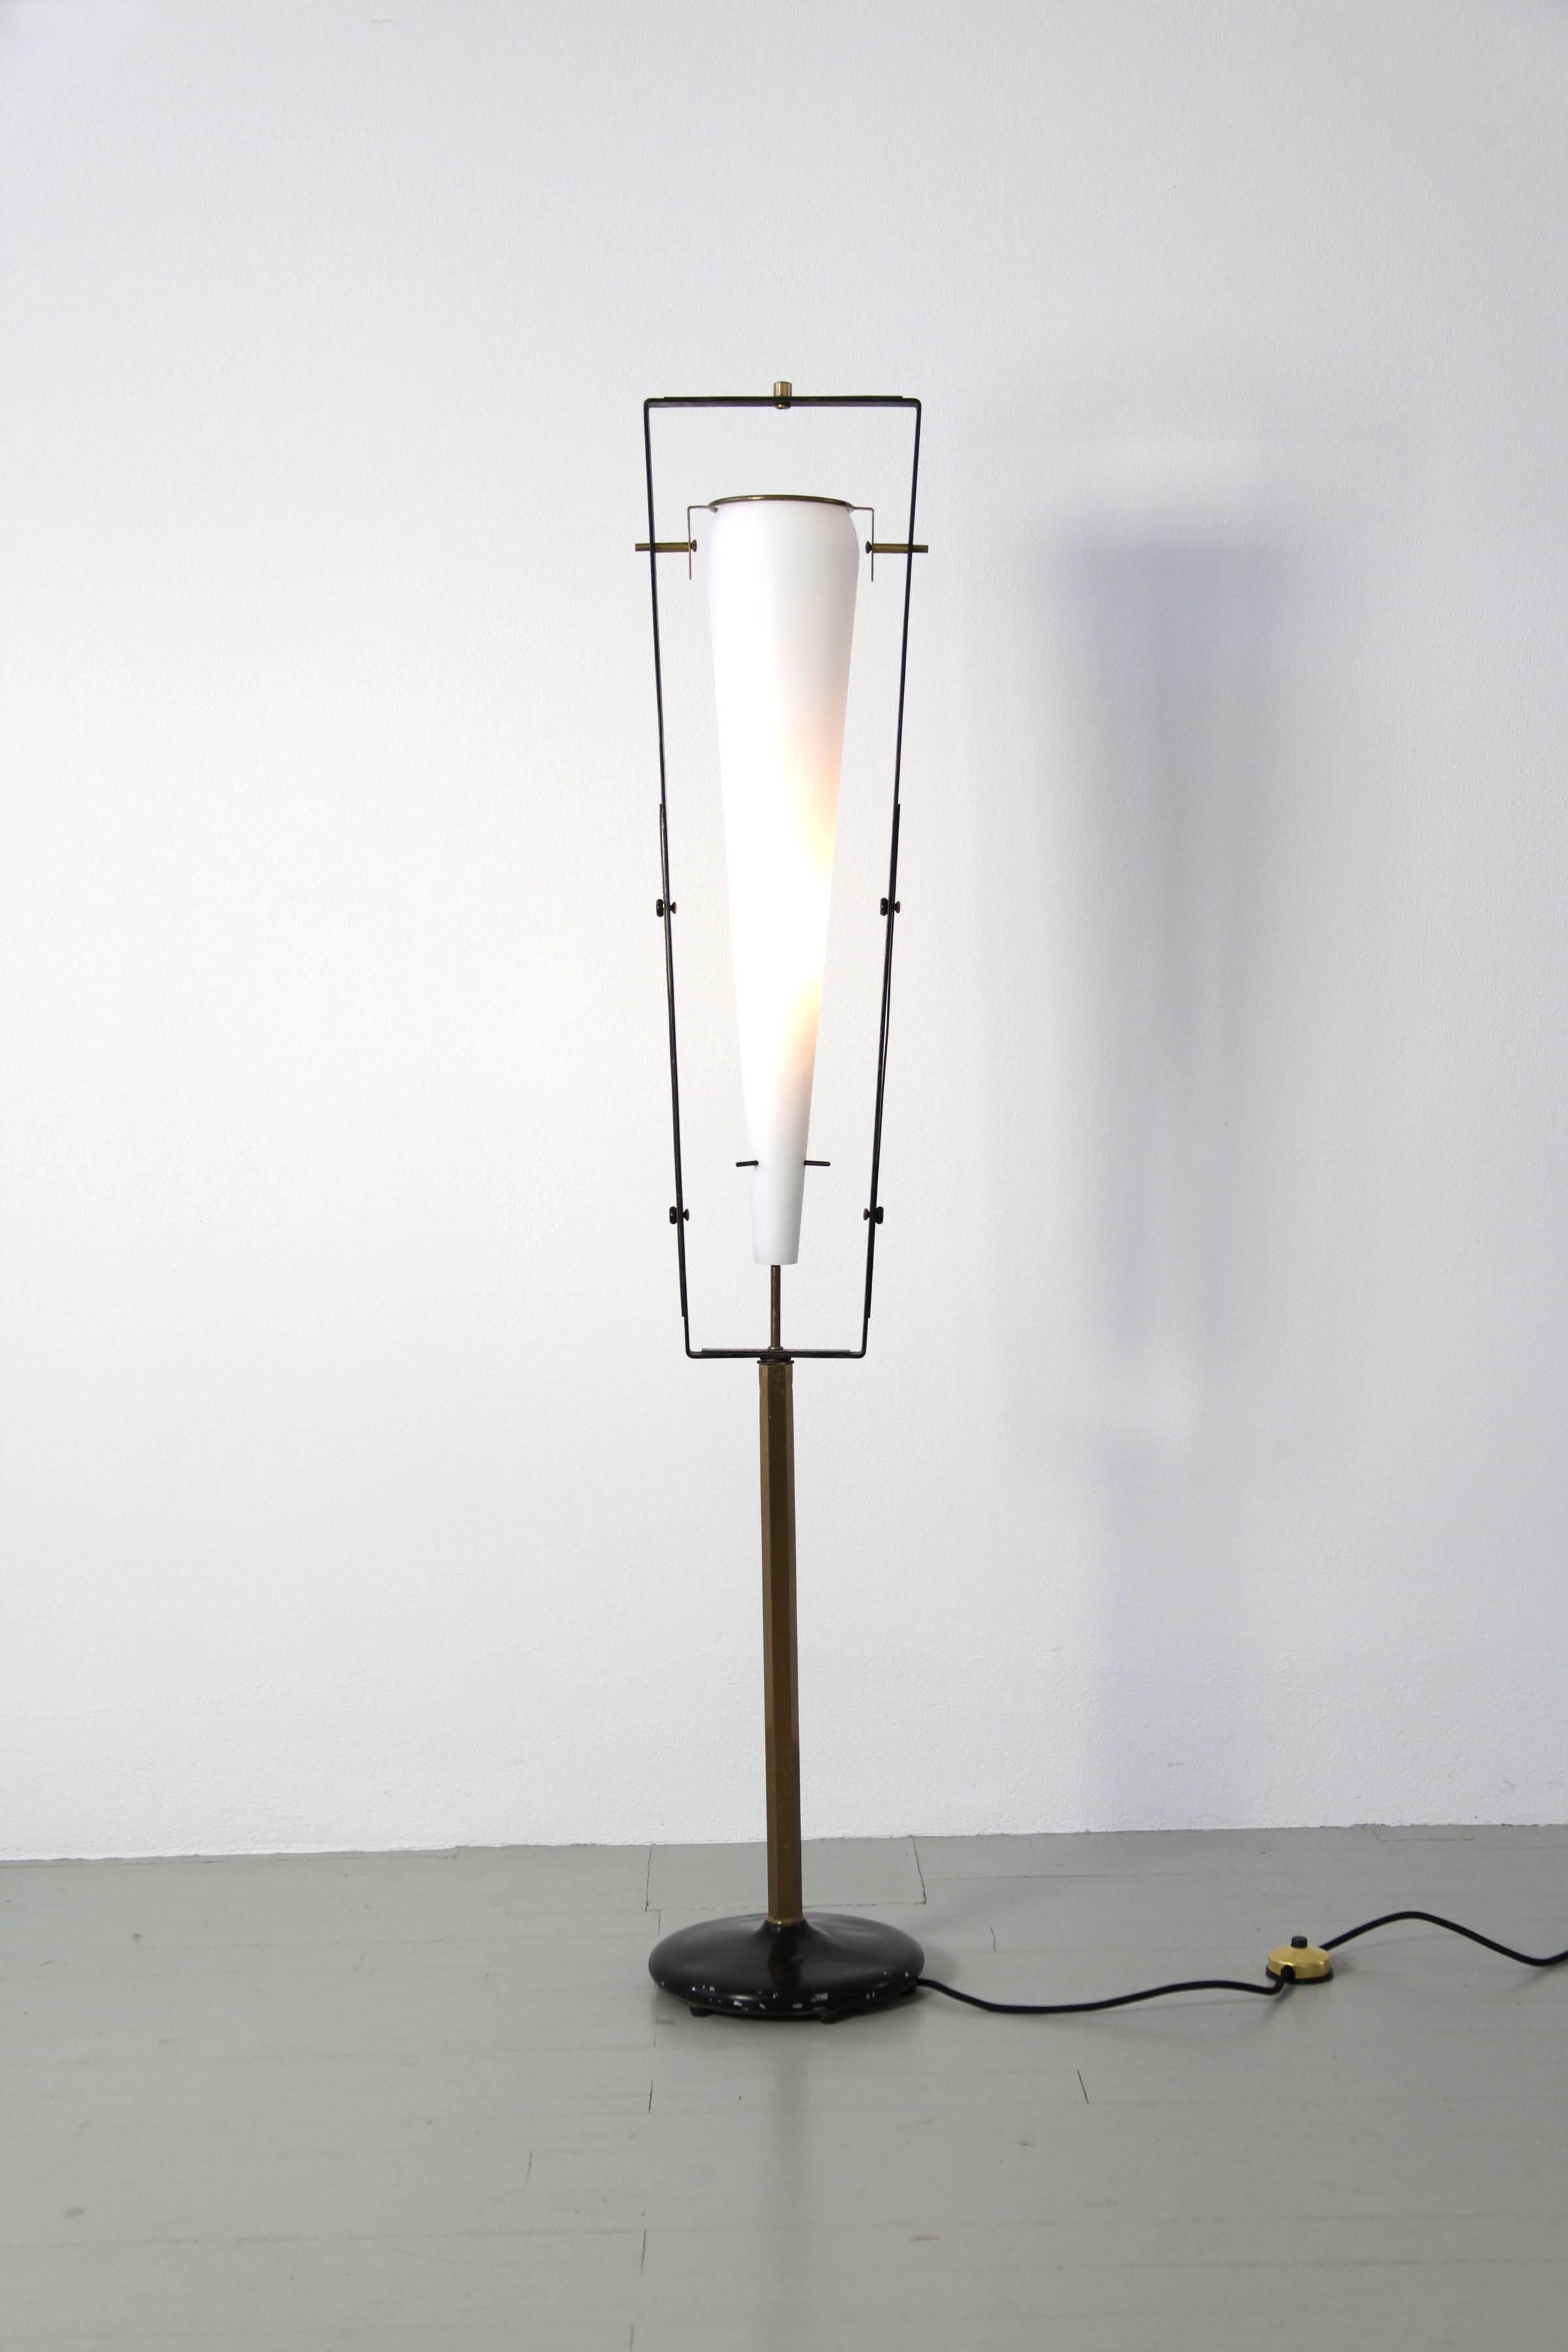 Diese faszinierende Stehlampe aus den 1950er Jahren ist eine Kreation von Gilardi & Barzaghi, renommierten Designern aus Italien. Das Design mit dem großen, satinierten Glasschirm, der sich zart in einen Rahmen aus Messing schmiegt, strahlt eine